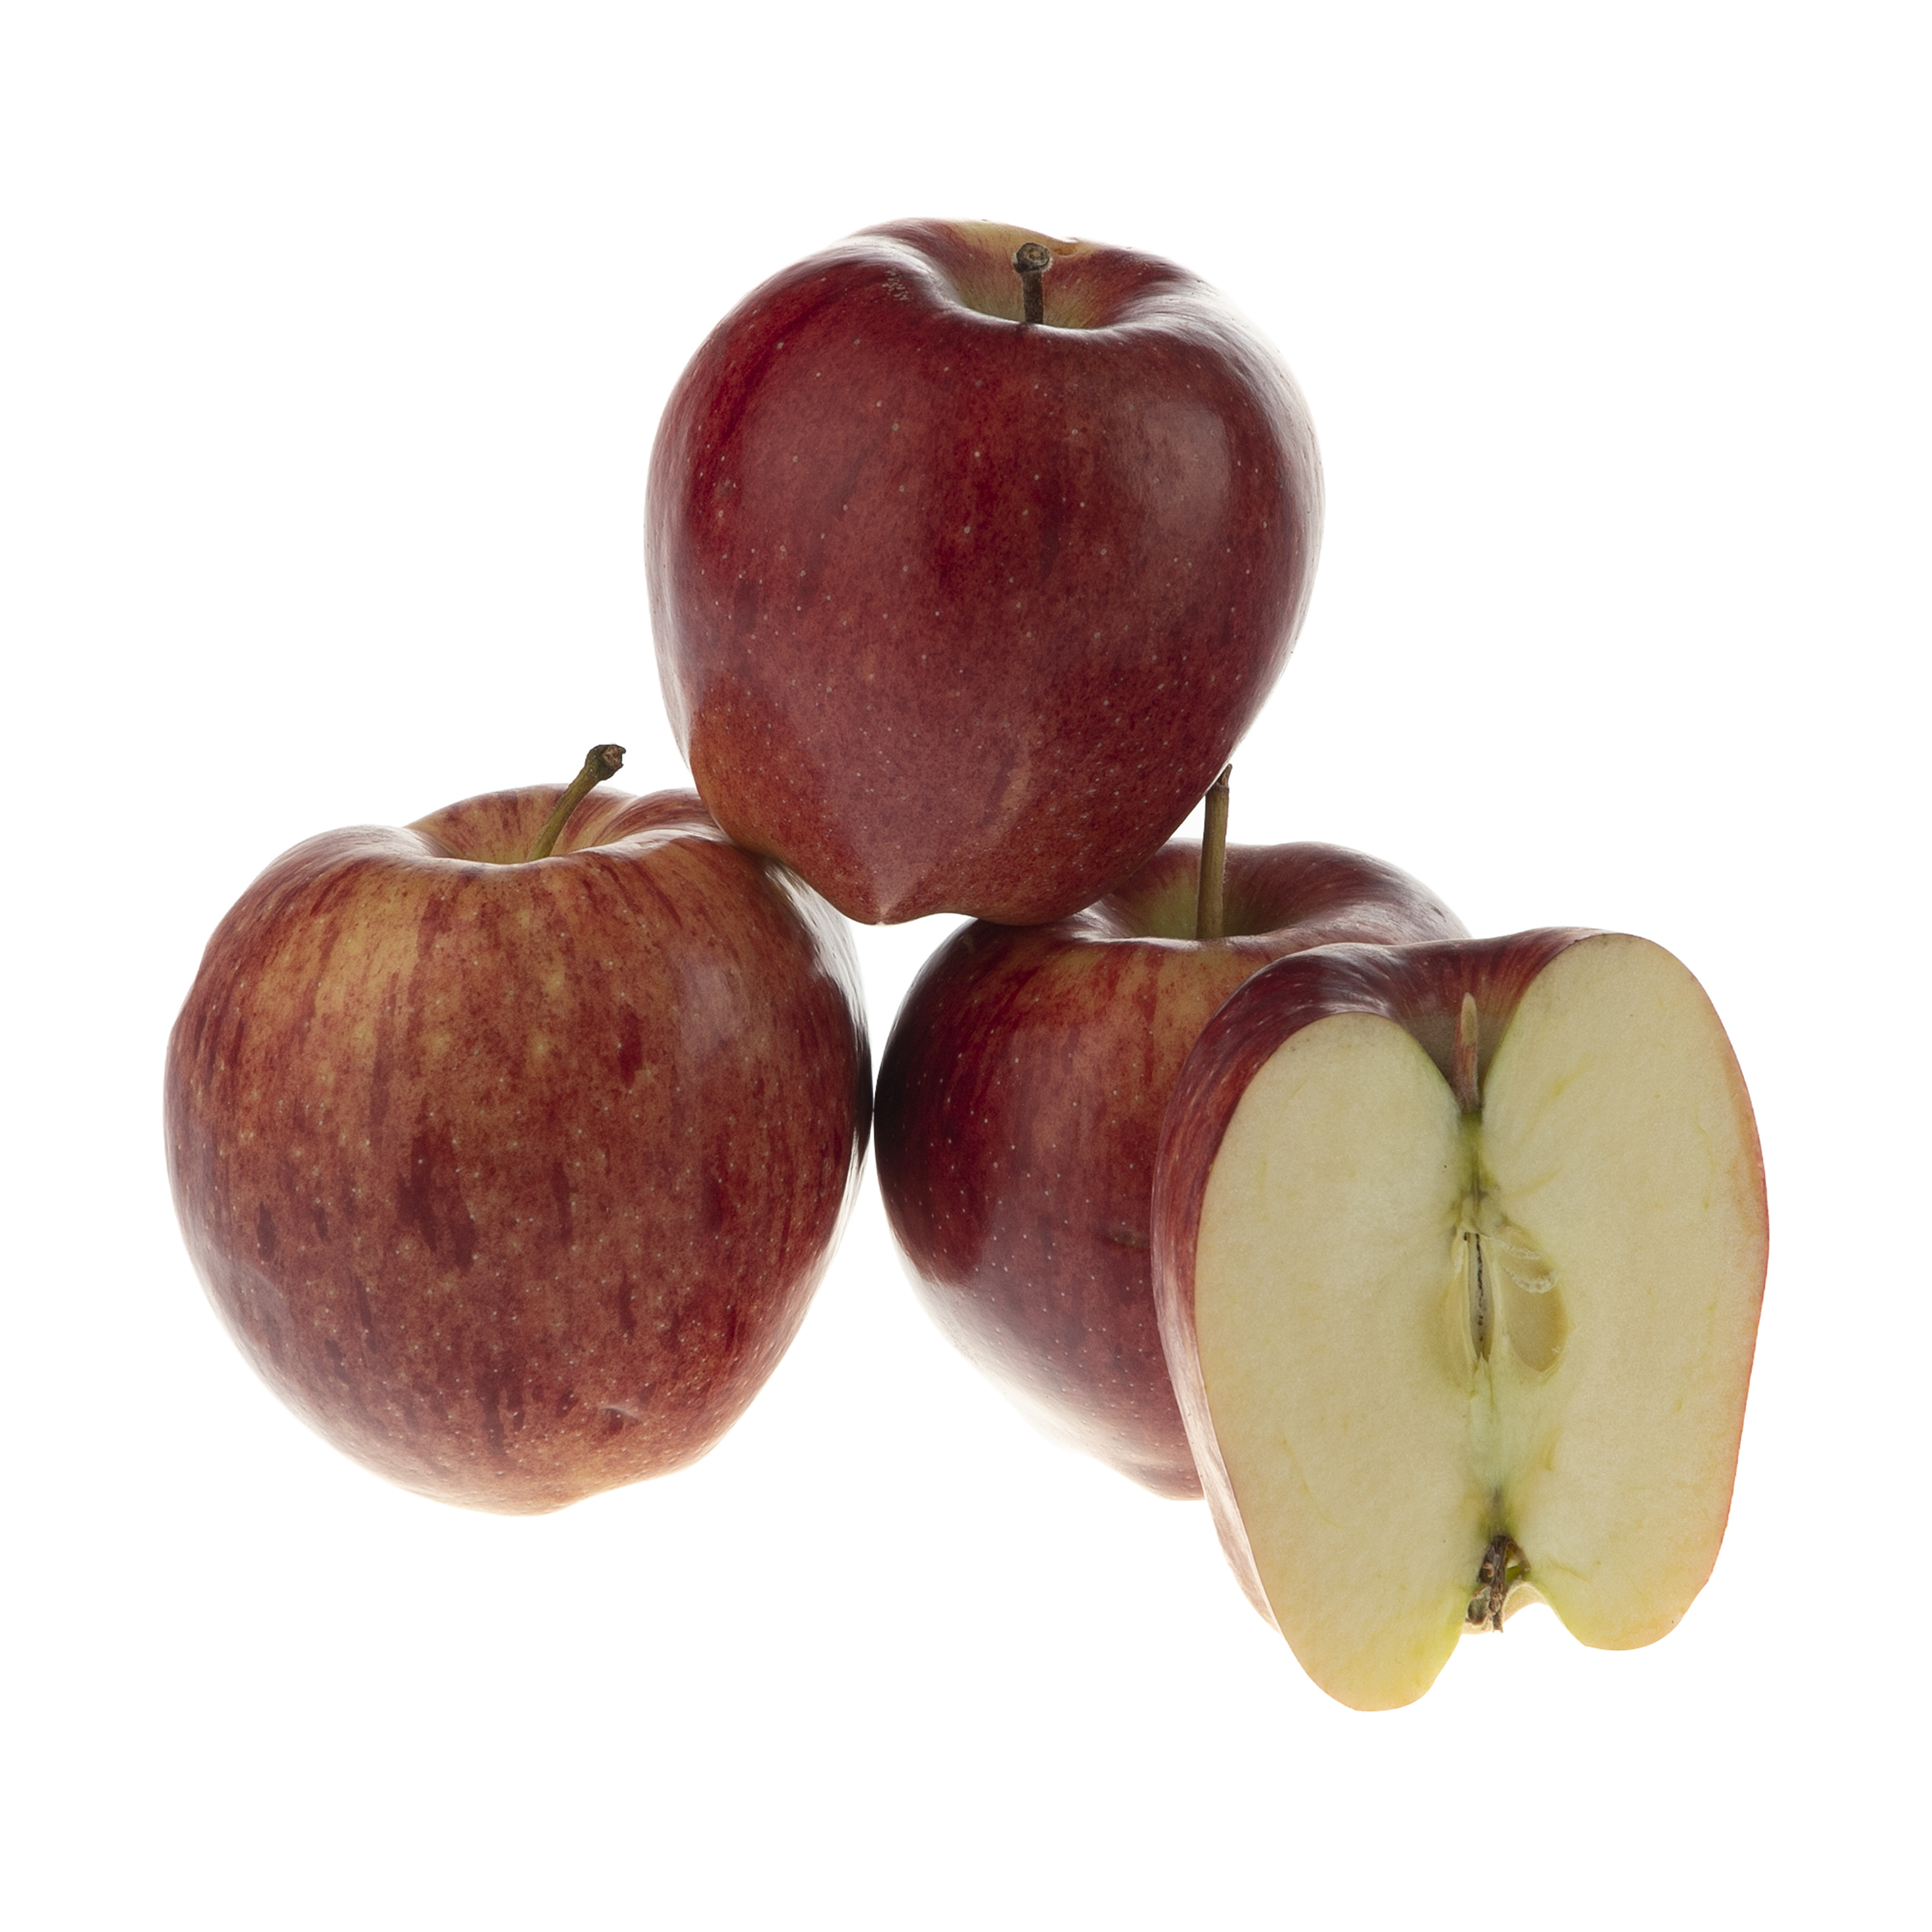 خرید سیب قرمز ارگانیک رضوانی - 1 کیلوگرم - فروشگاه ارگانیک ایران